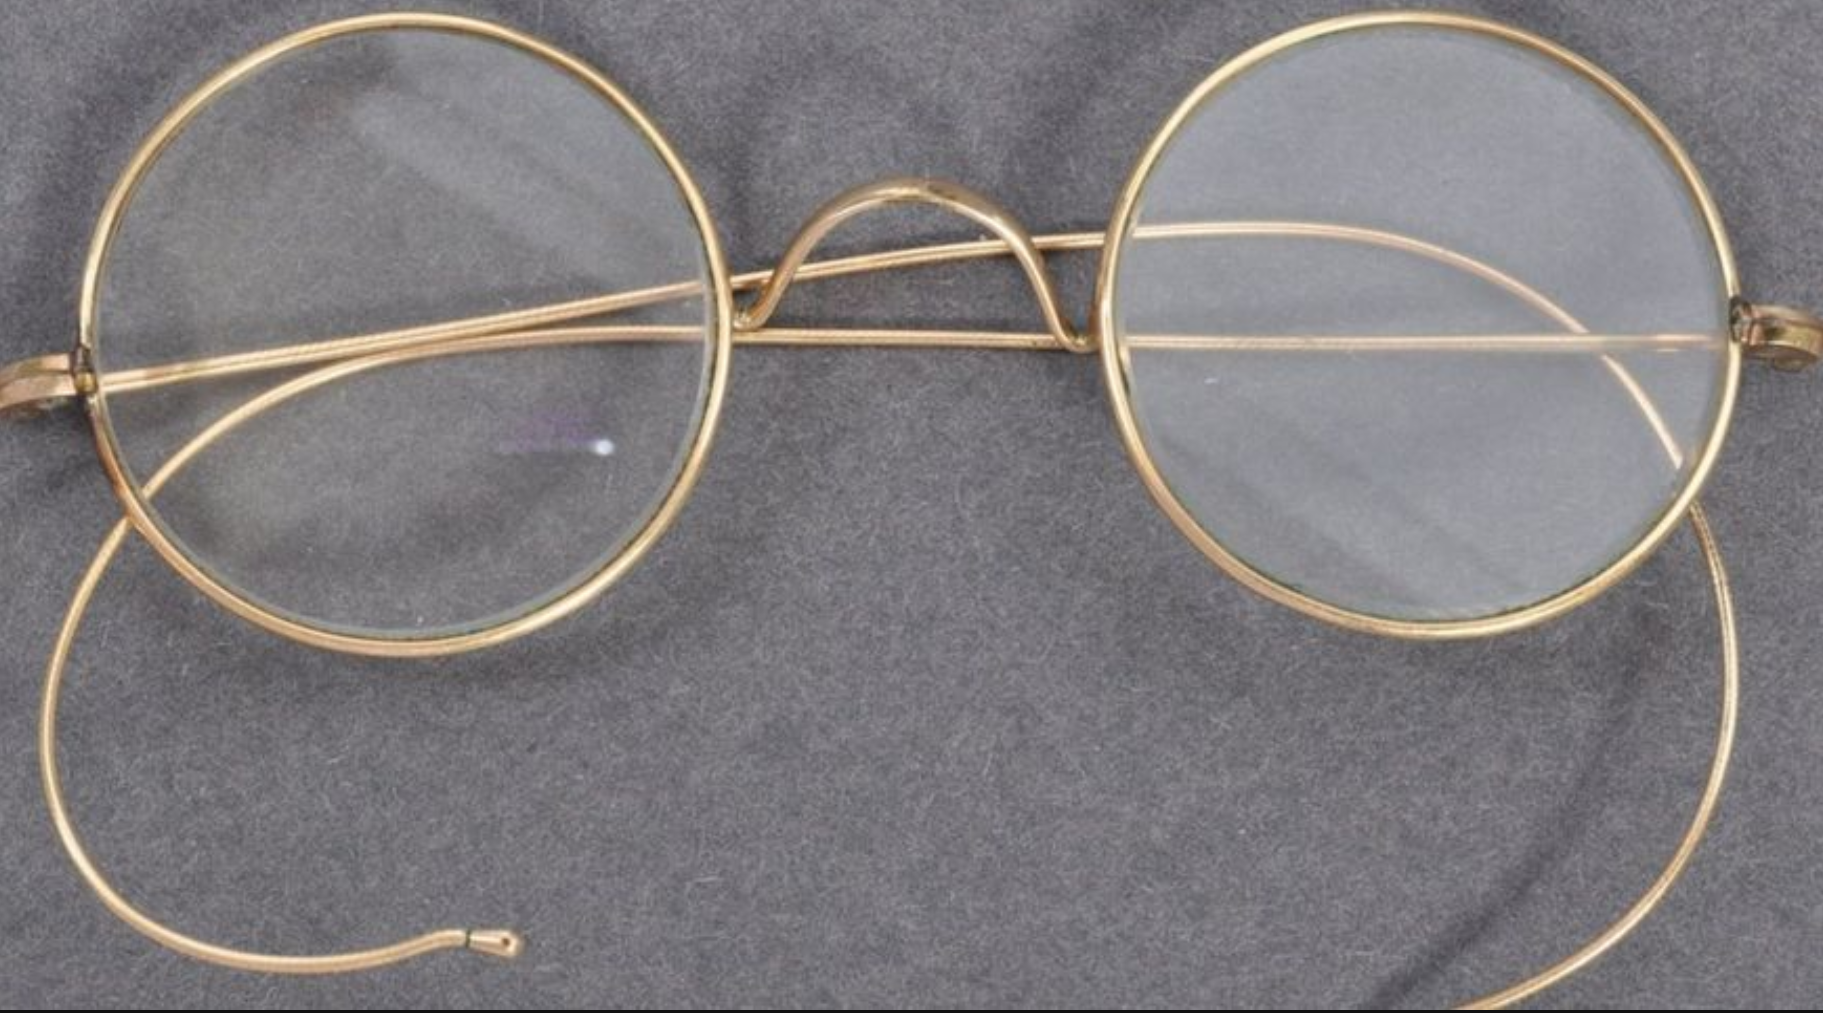 Mahatma Gandhi's glasses